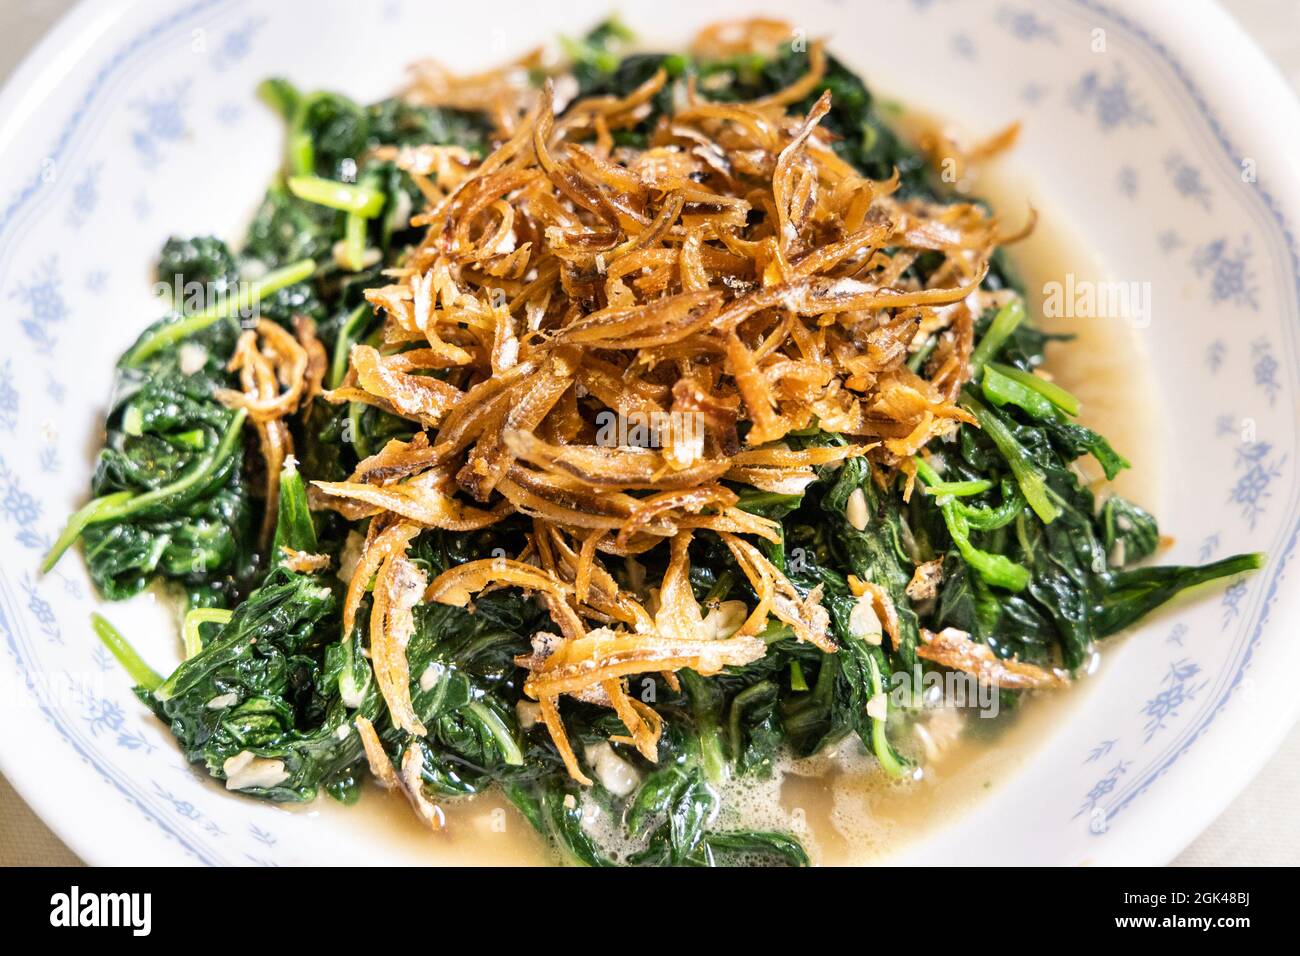 Gros plan sur un simple poêlage de légumes d'épinard vert d'amaranth chinois avec de l'ail, du sel et des anchois frits. Banque D'Images